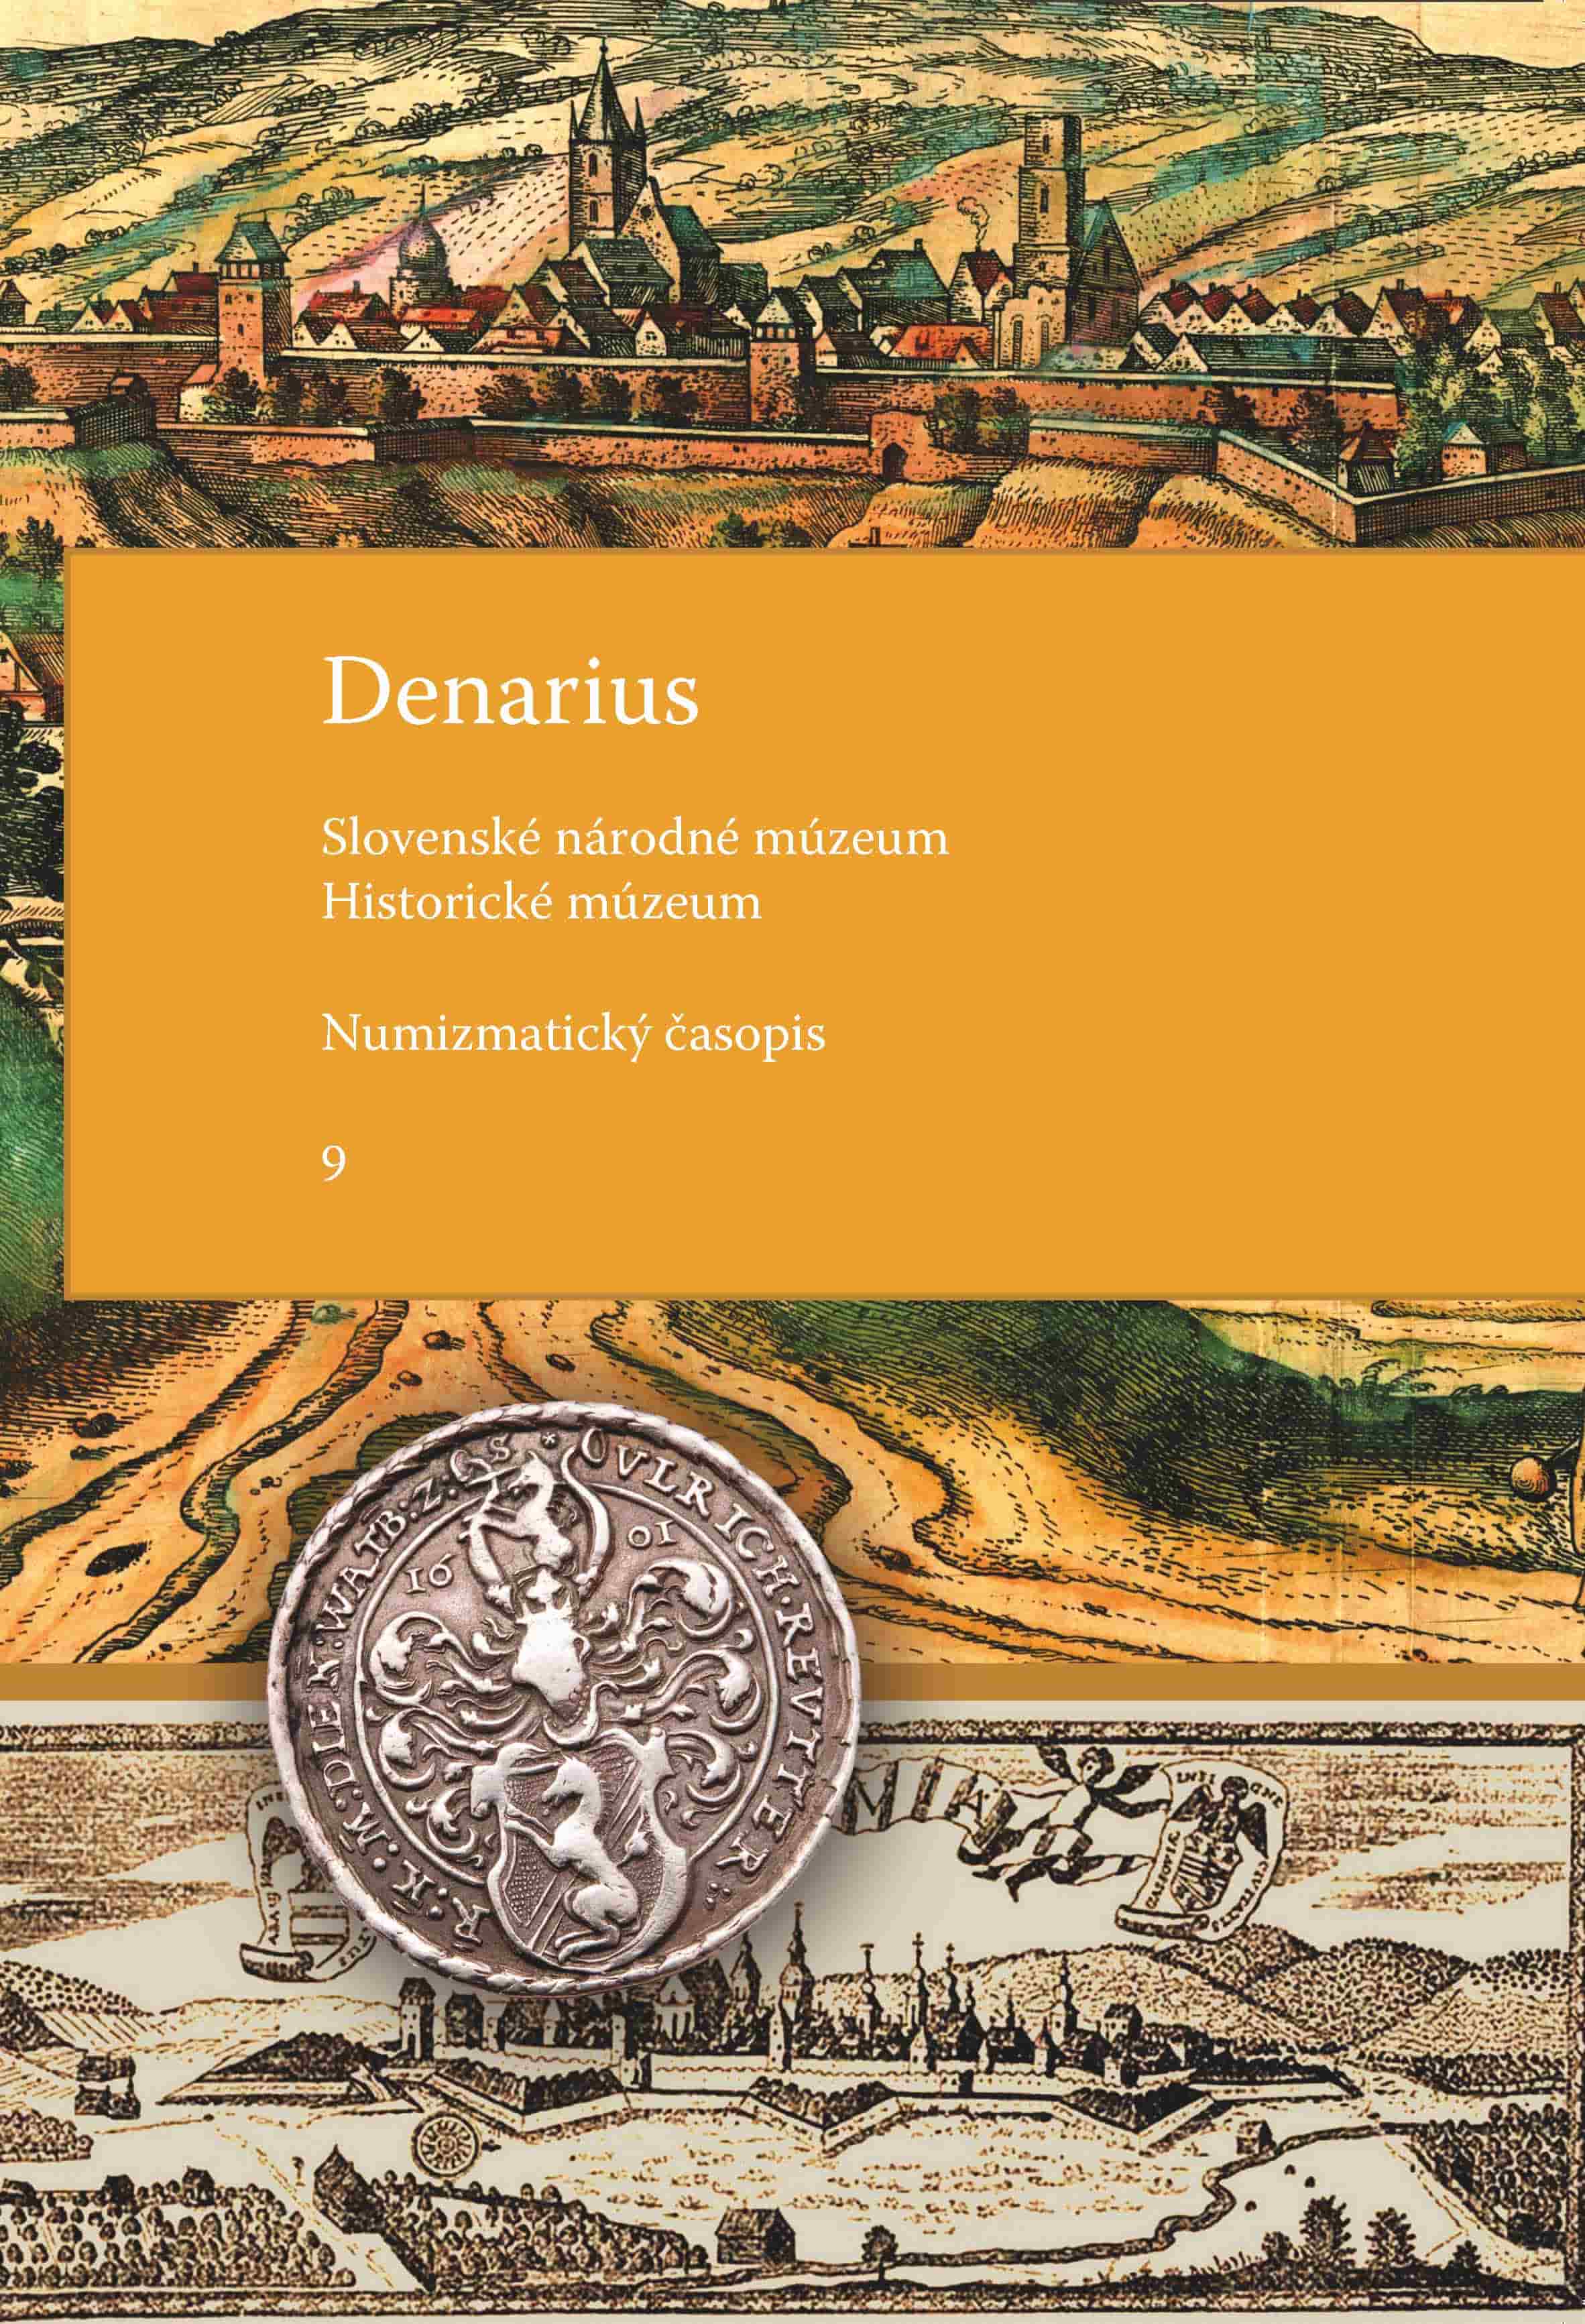 Denarius Numizmatický časopis  9. číslo